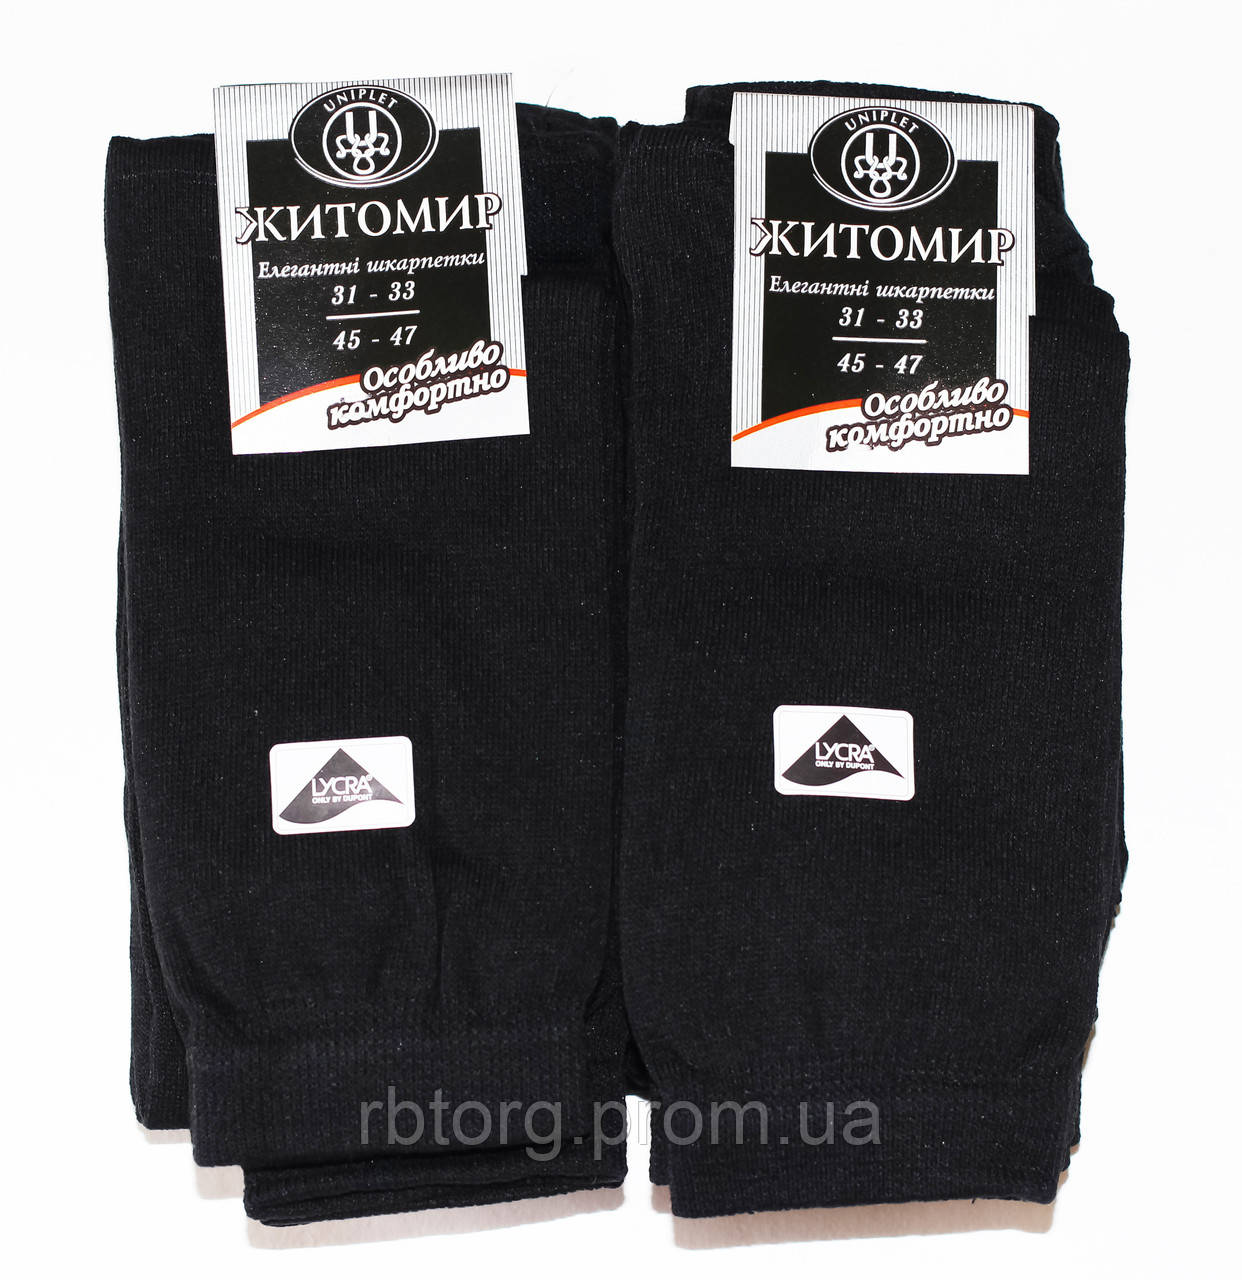 Шкарпетки чоловічі Житомир 45-47 розмір, чорні. 12 пар.